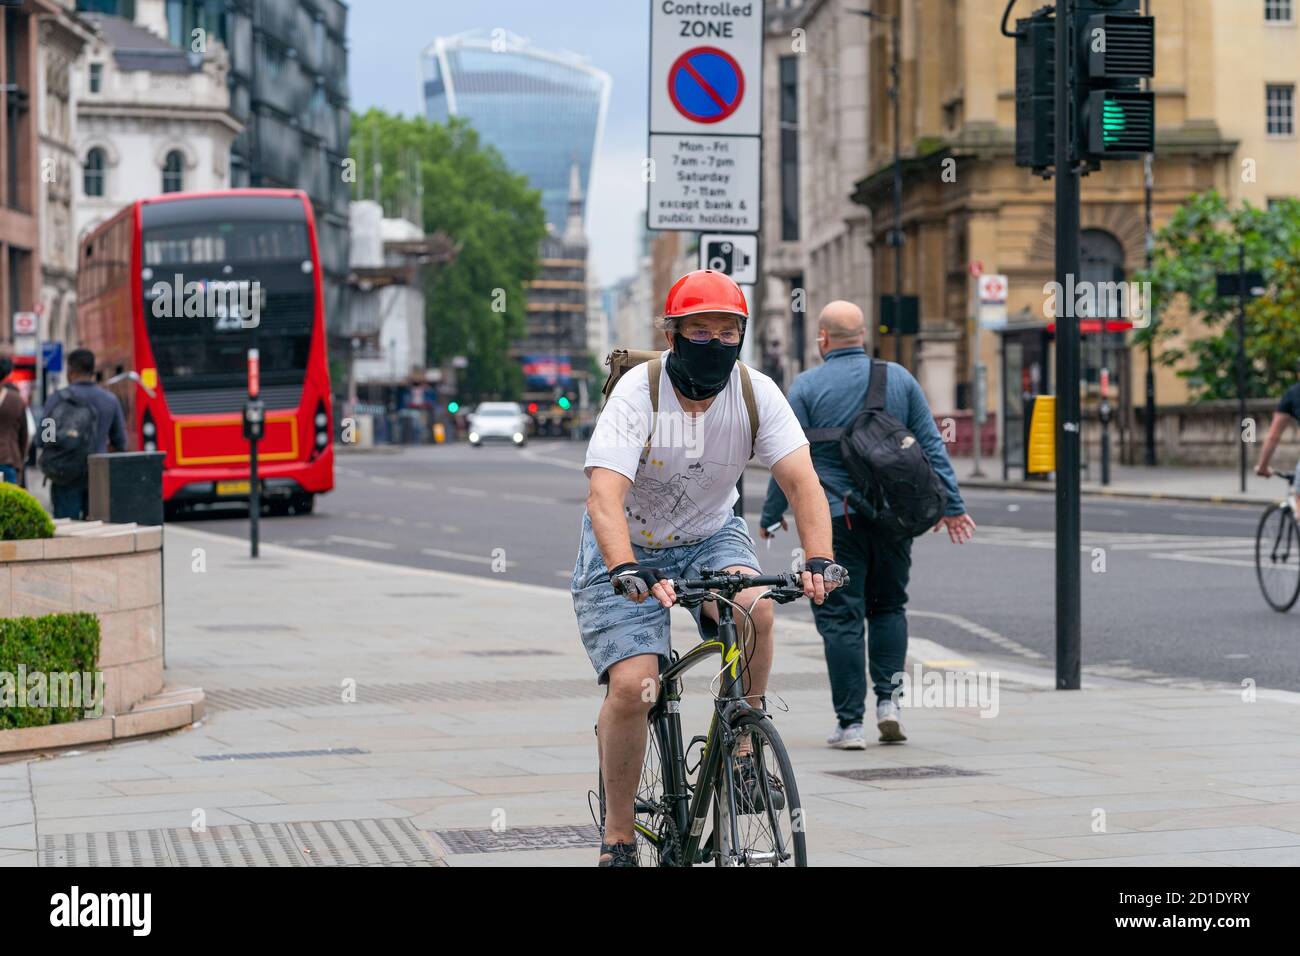 LONDRES, ANGLETERRE - 3 JUIN 2020: Cycliste âgé de Holborn London portant un masque facial, des lunettes et un casque d'accident pendant la COVID Banque D'Images